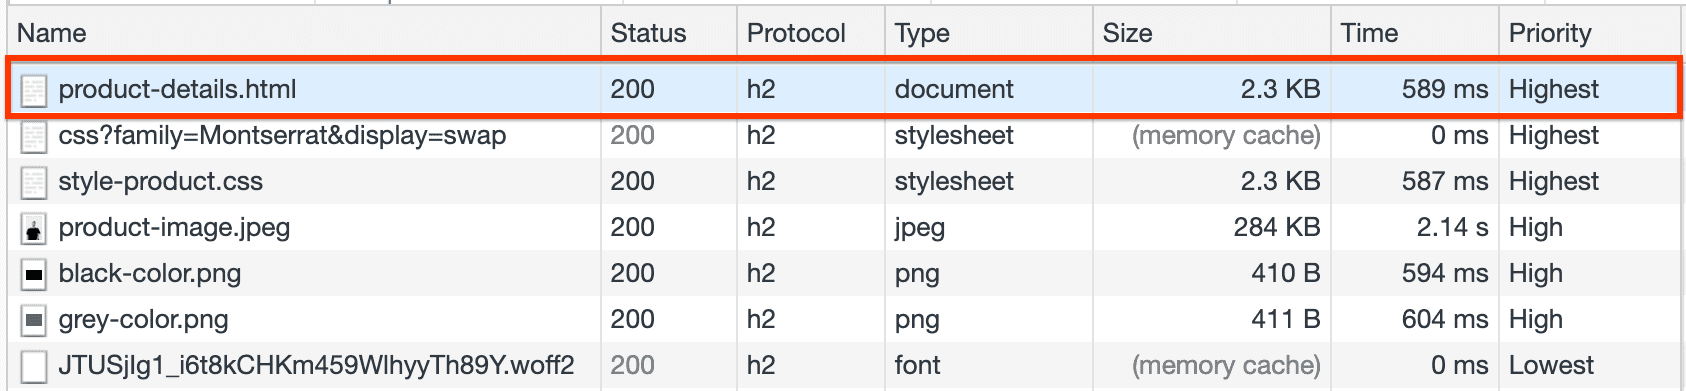 Панель сети, показывающая время загрузки файла Product-details.html.